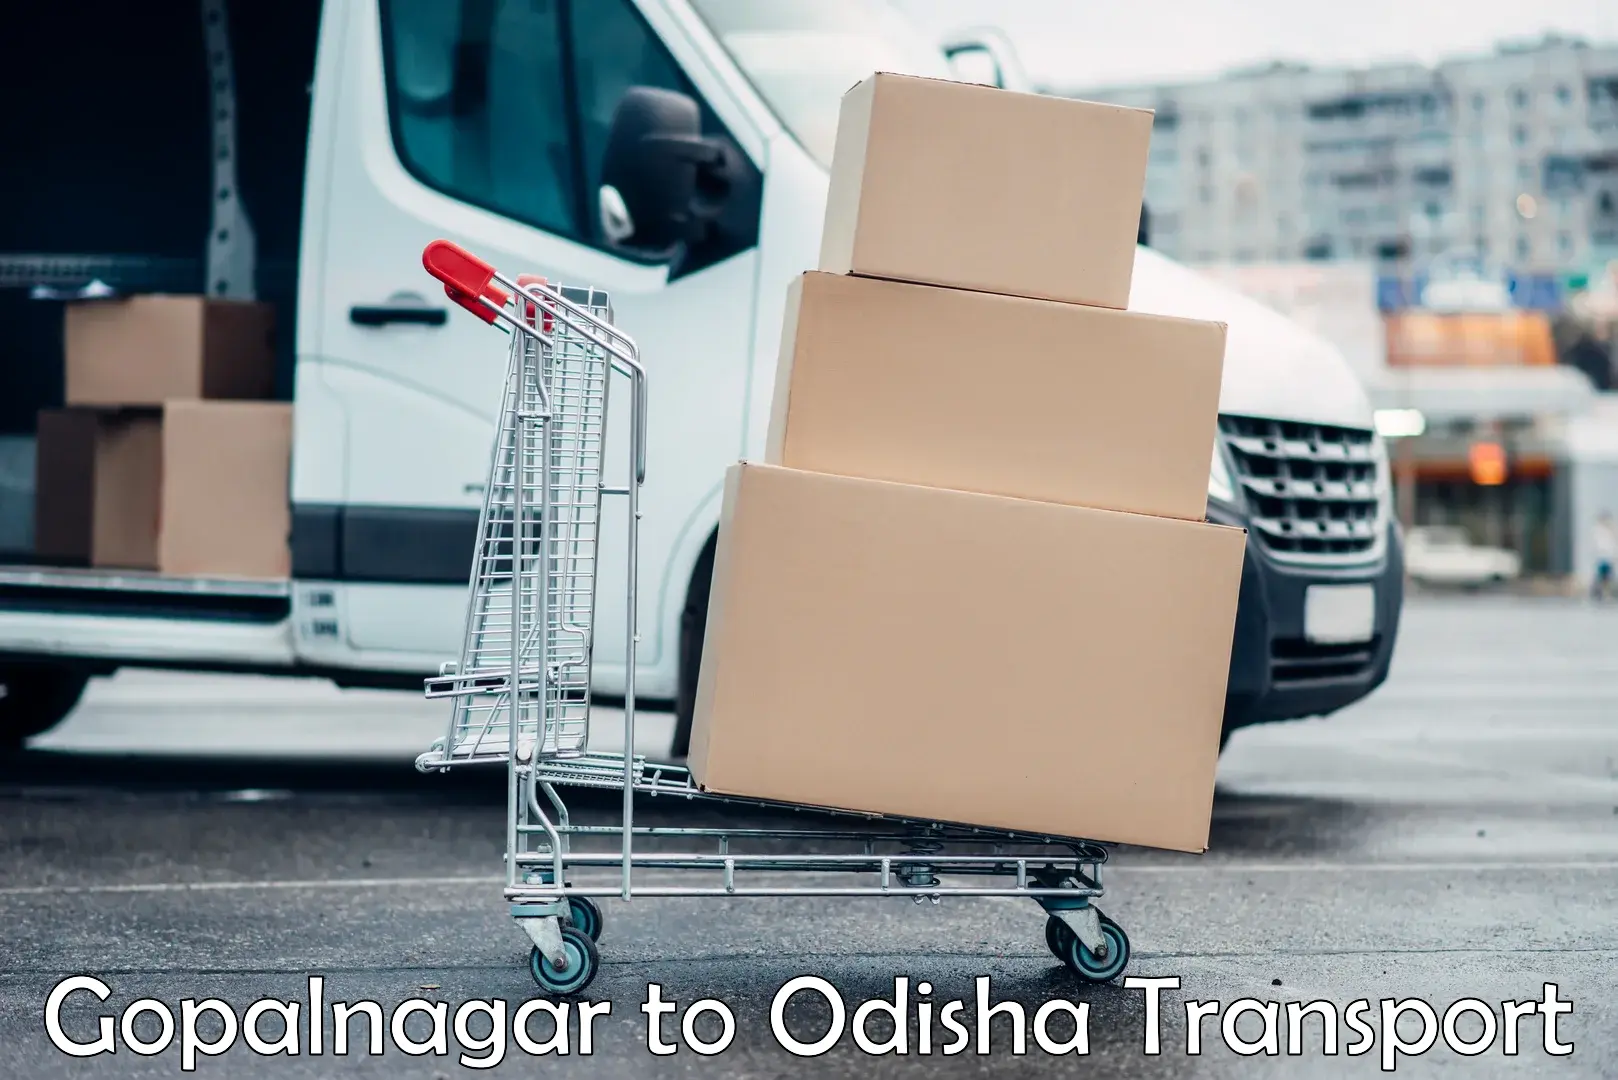 Nearby transport service Gopalnagar to Sundergarh